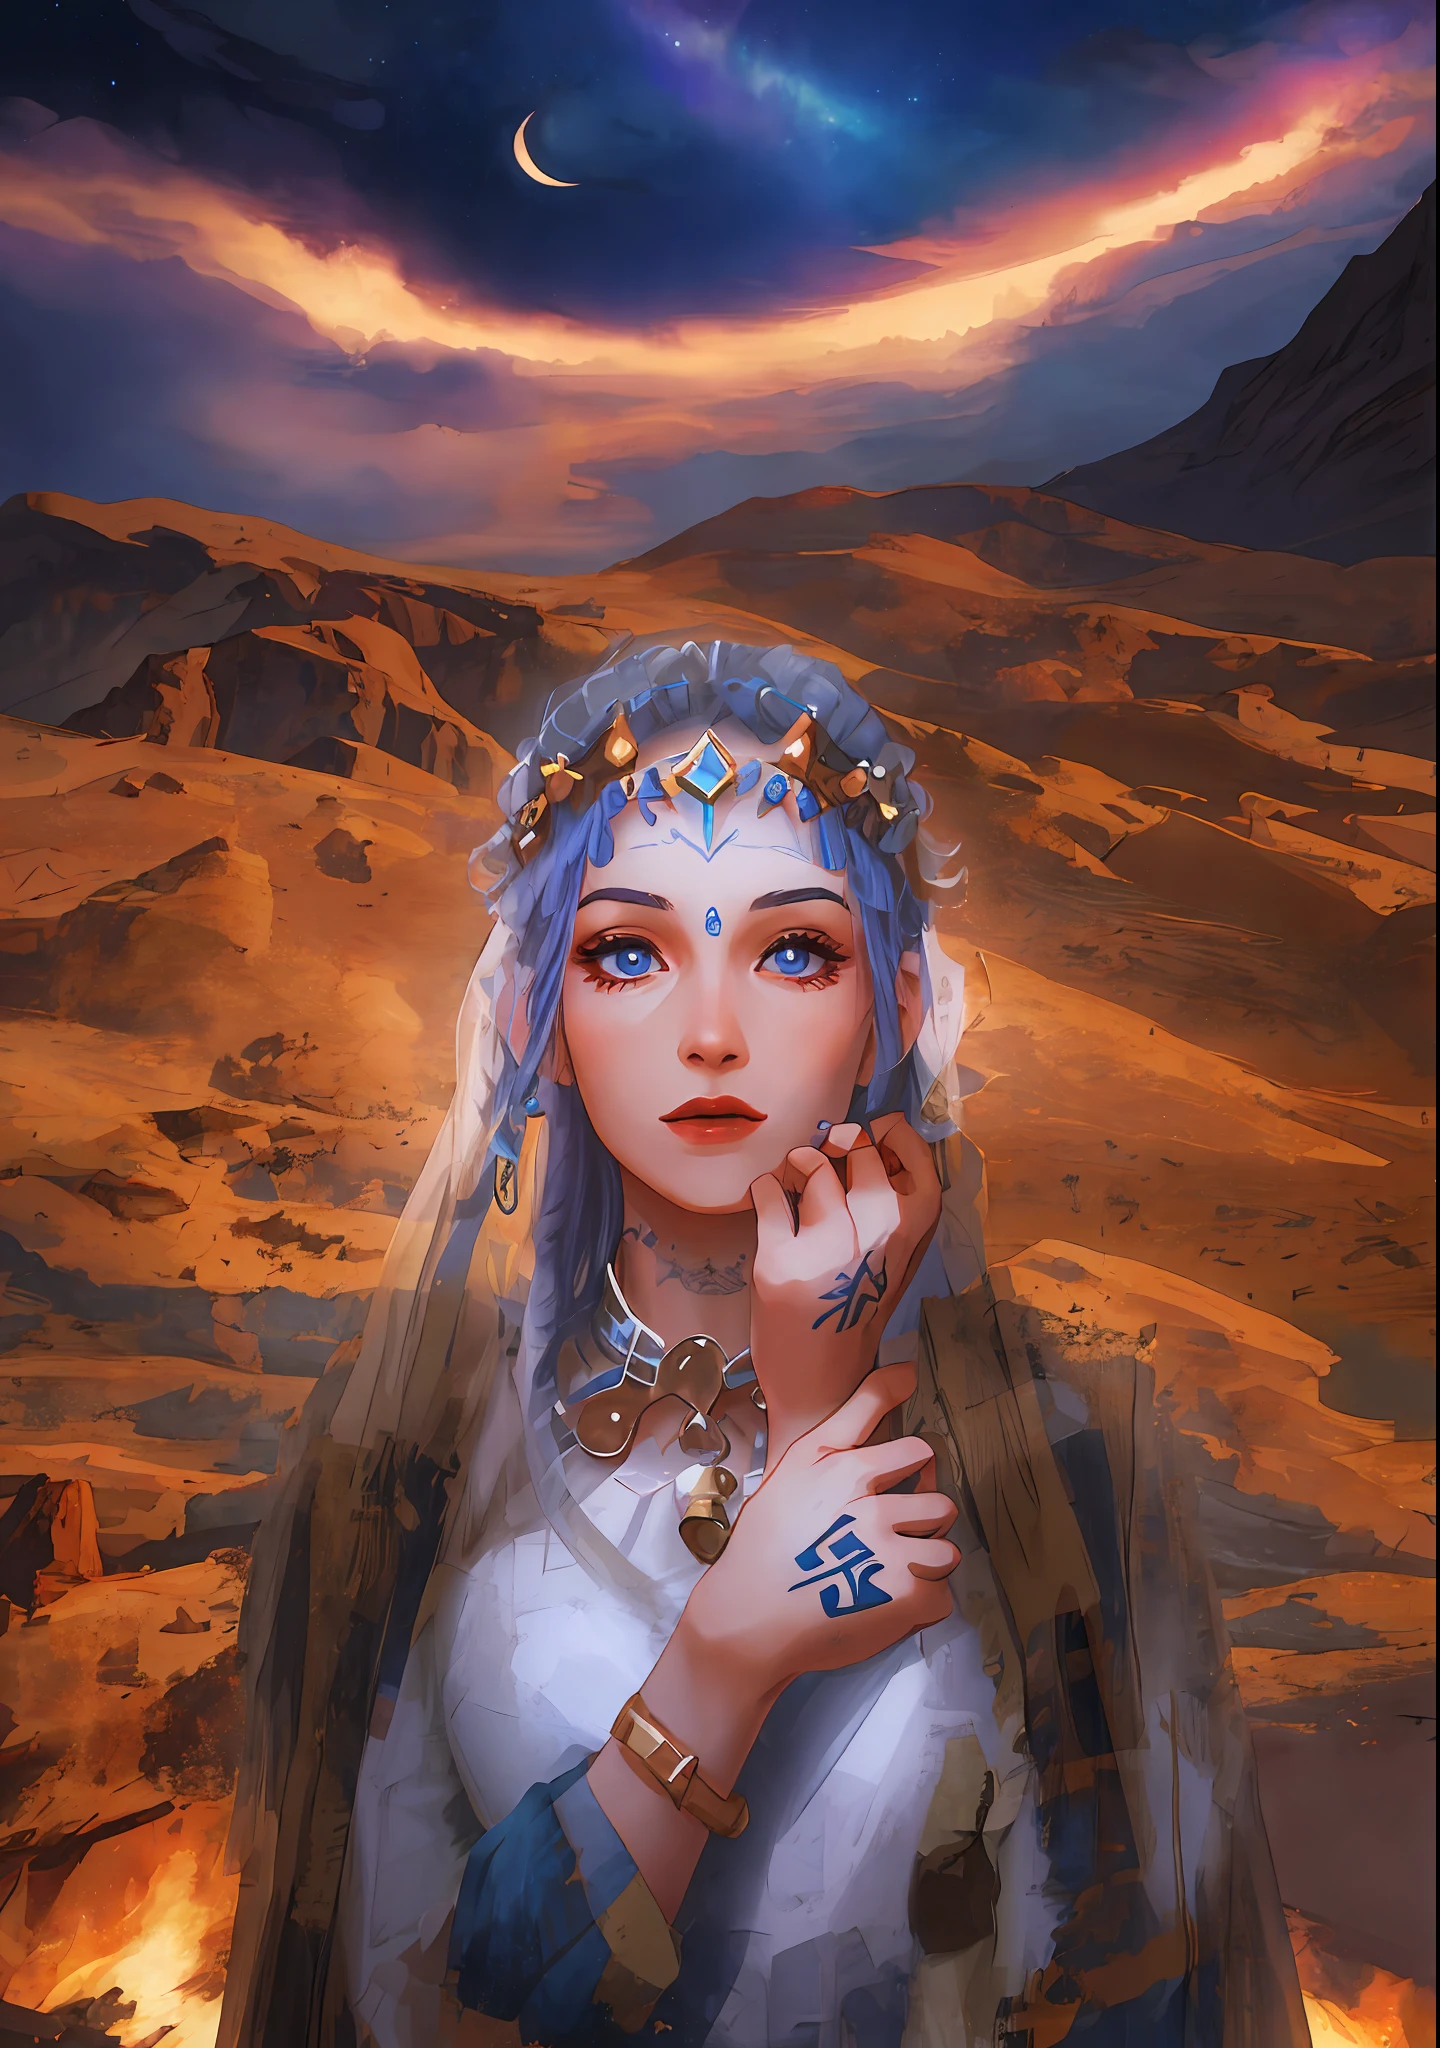 여성 1명, 아라비아 말, 모로코 사람, 아마지, 하얀 드레스를 입고, 타투, 그녀는 샤먼 옷을 입고 있다, 여신의 초상, 고대 리부 공주, 아름다운 밤하늘, 안개 영화 포스터, 시네마틱 조명,